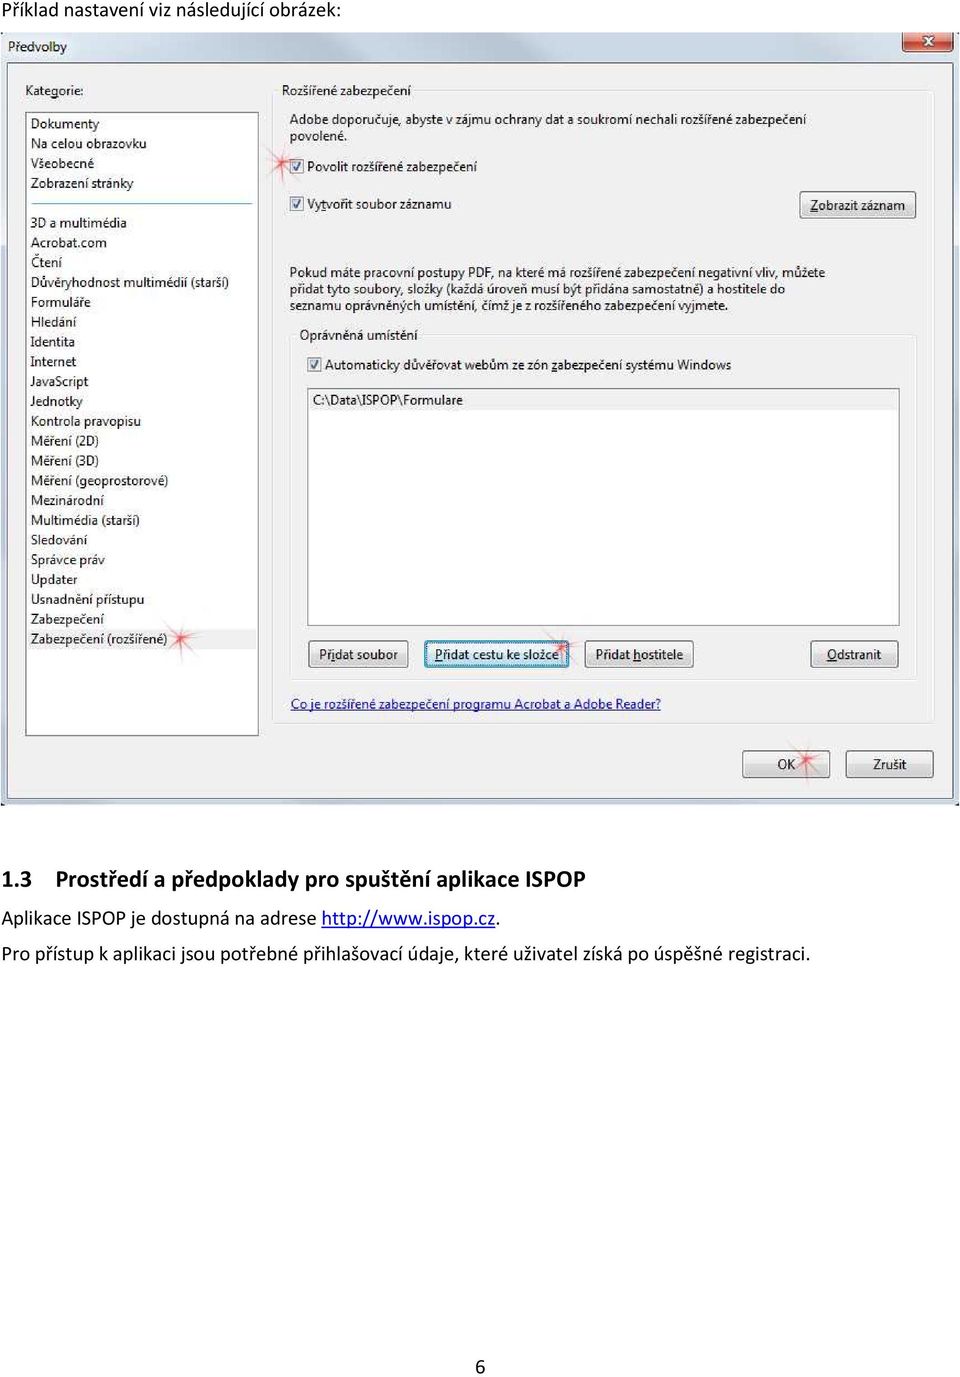 ISPOP je dostupná na adrese http://www.ispop.cz.